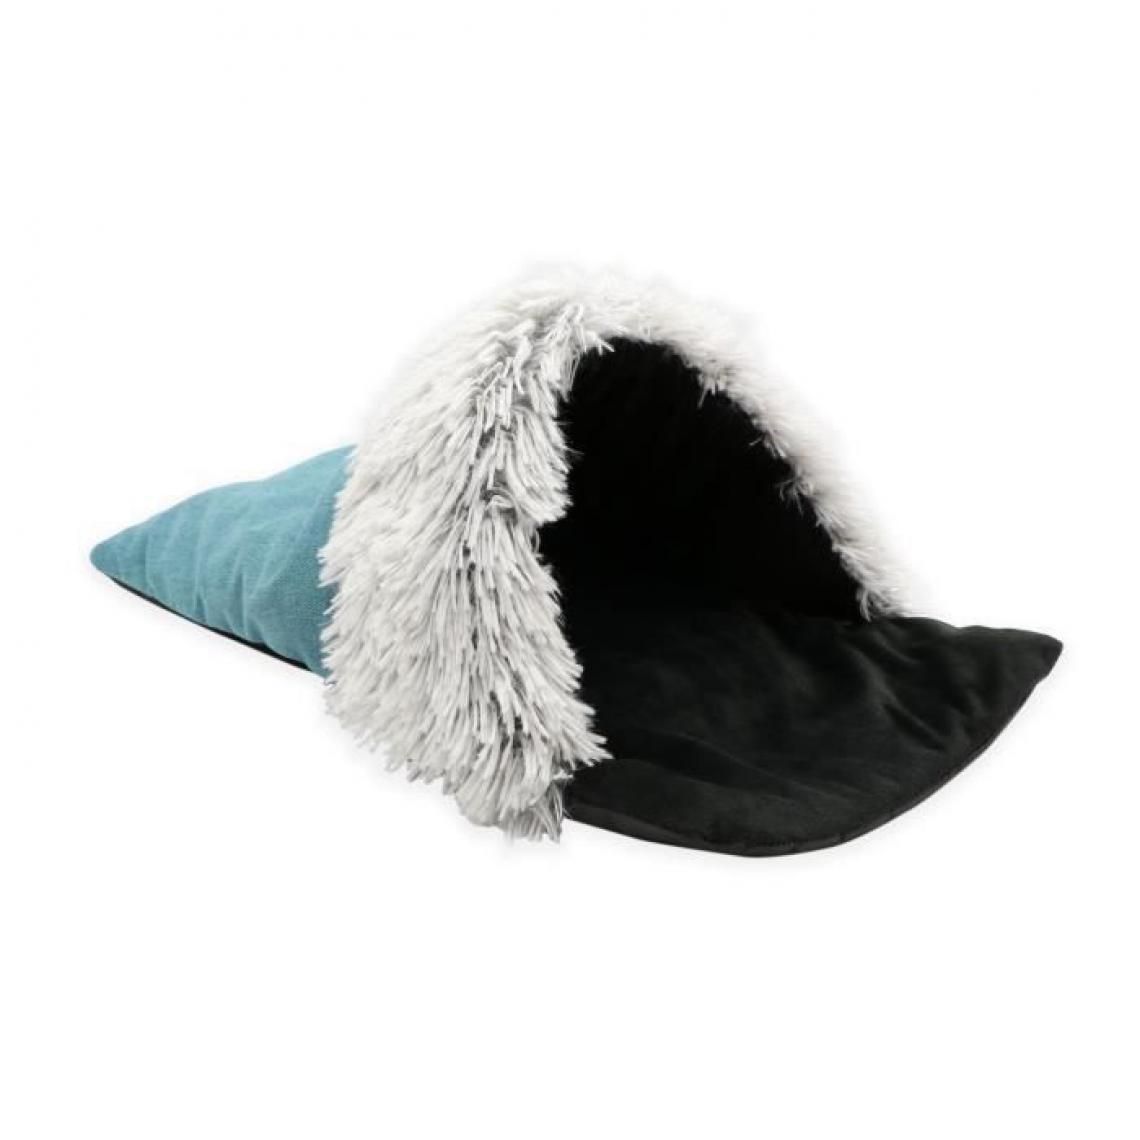 Tyrol - TYROL Couchage chaussette en fourrure pour chat/petit chien - Sac de couchage poils long doux - Dim. 54x32cm - Corbeille pour chien